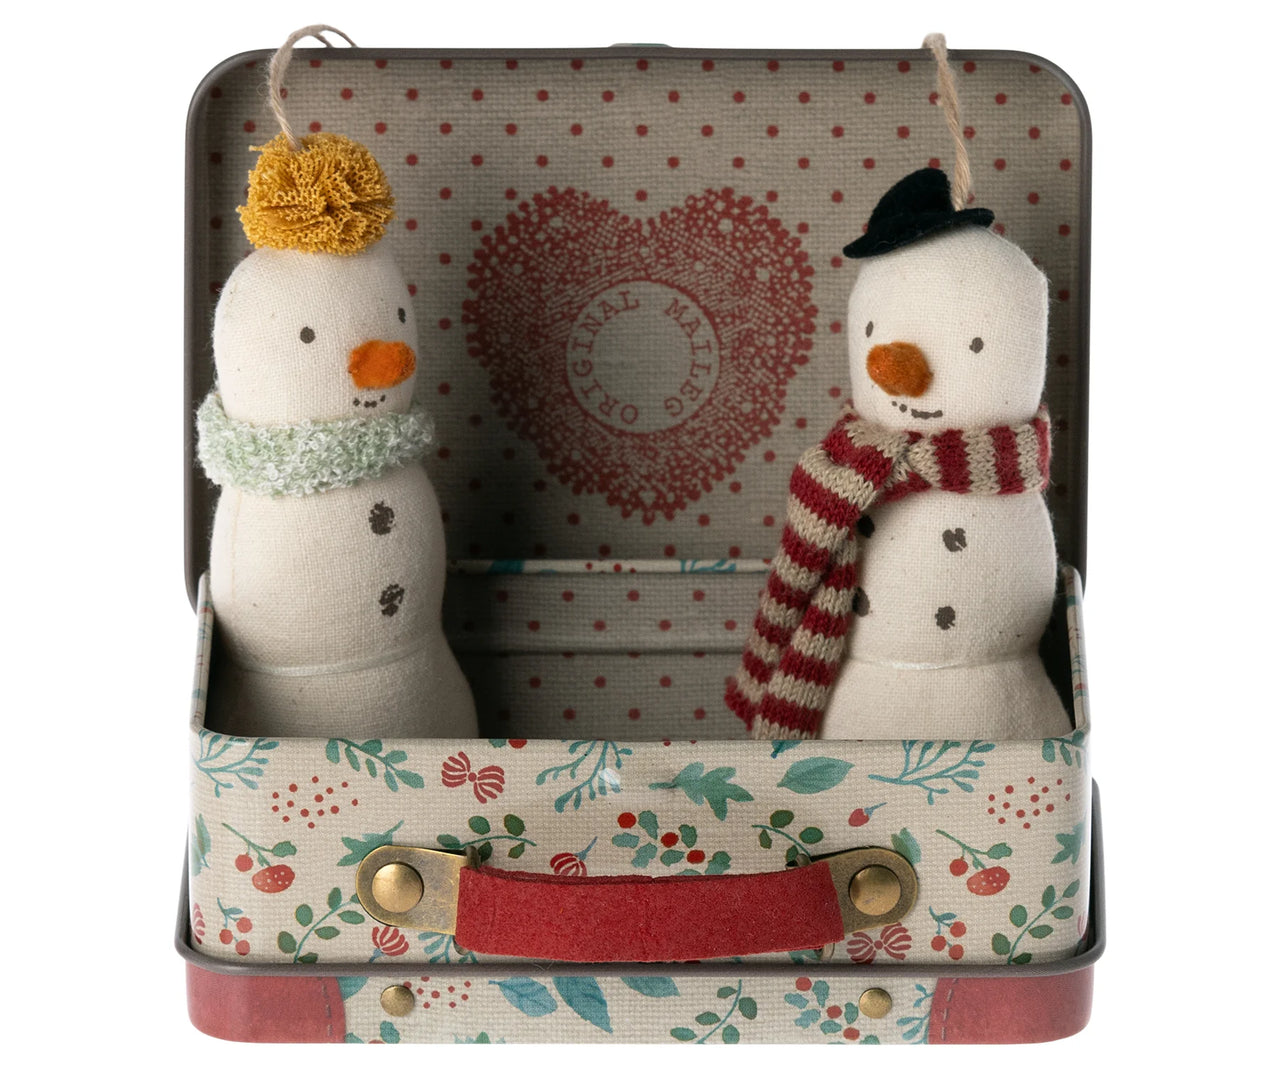 Snowman Ornament, 2 Pcs in Suitcase